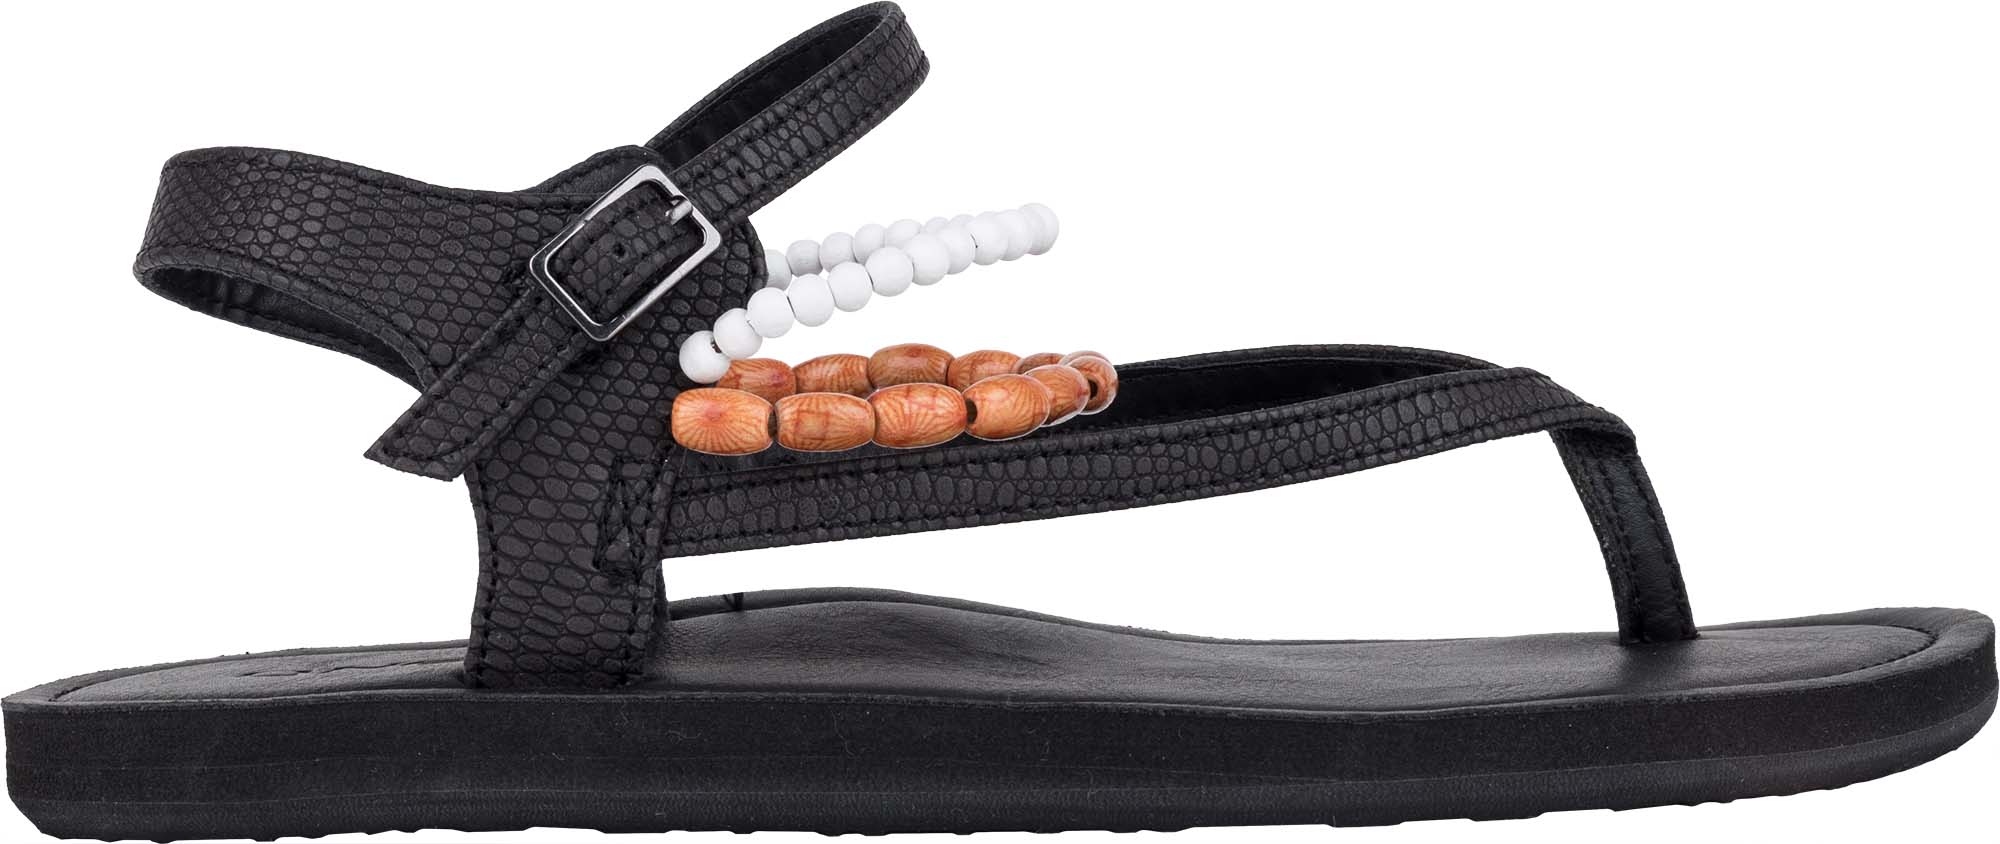 Dámské sandály